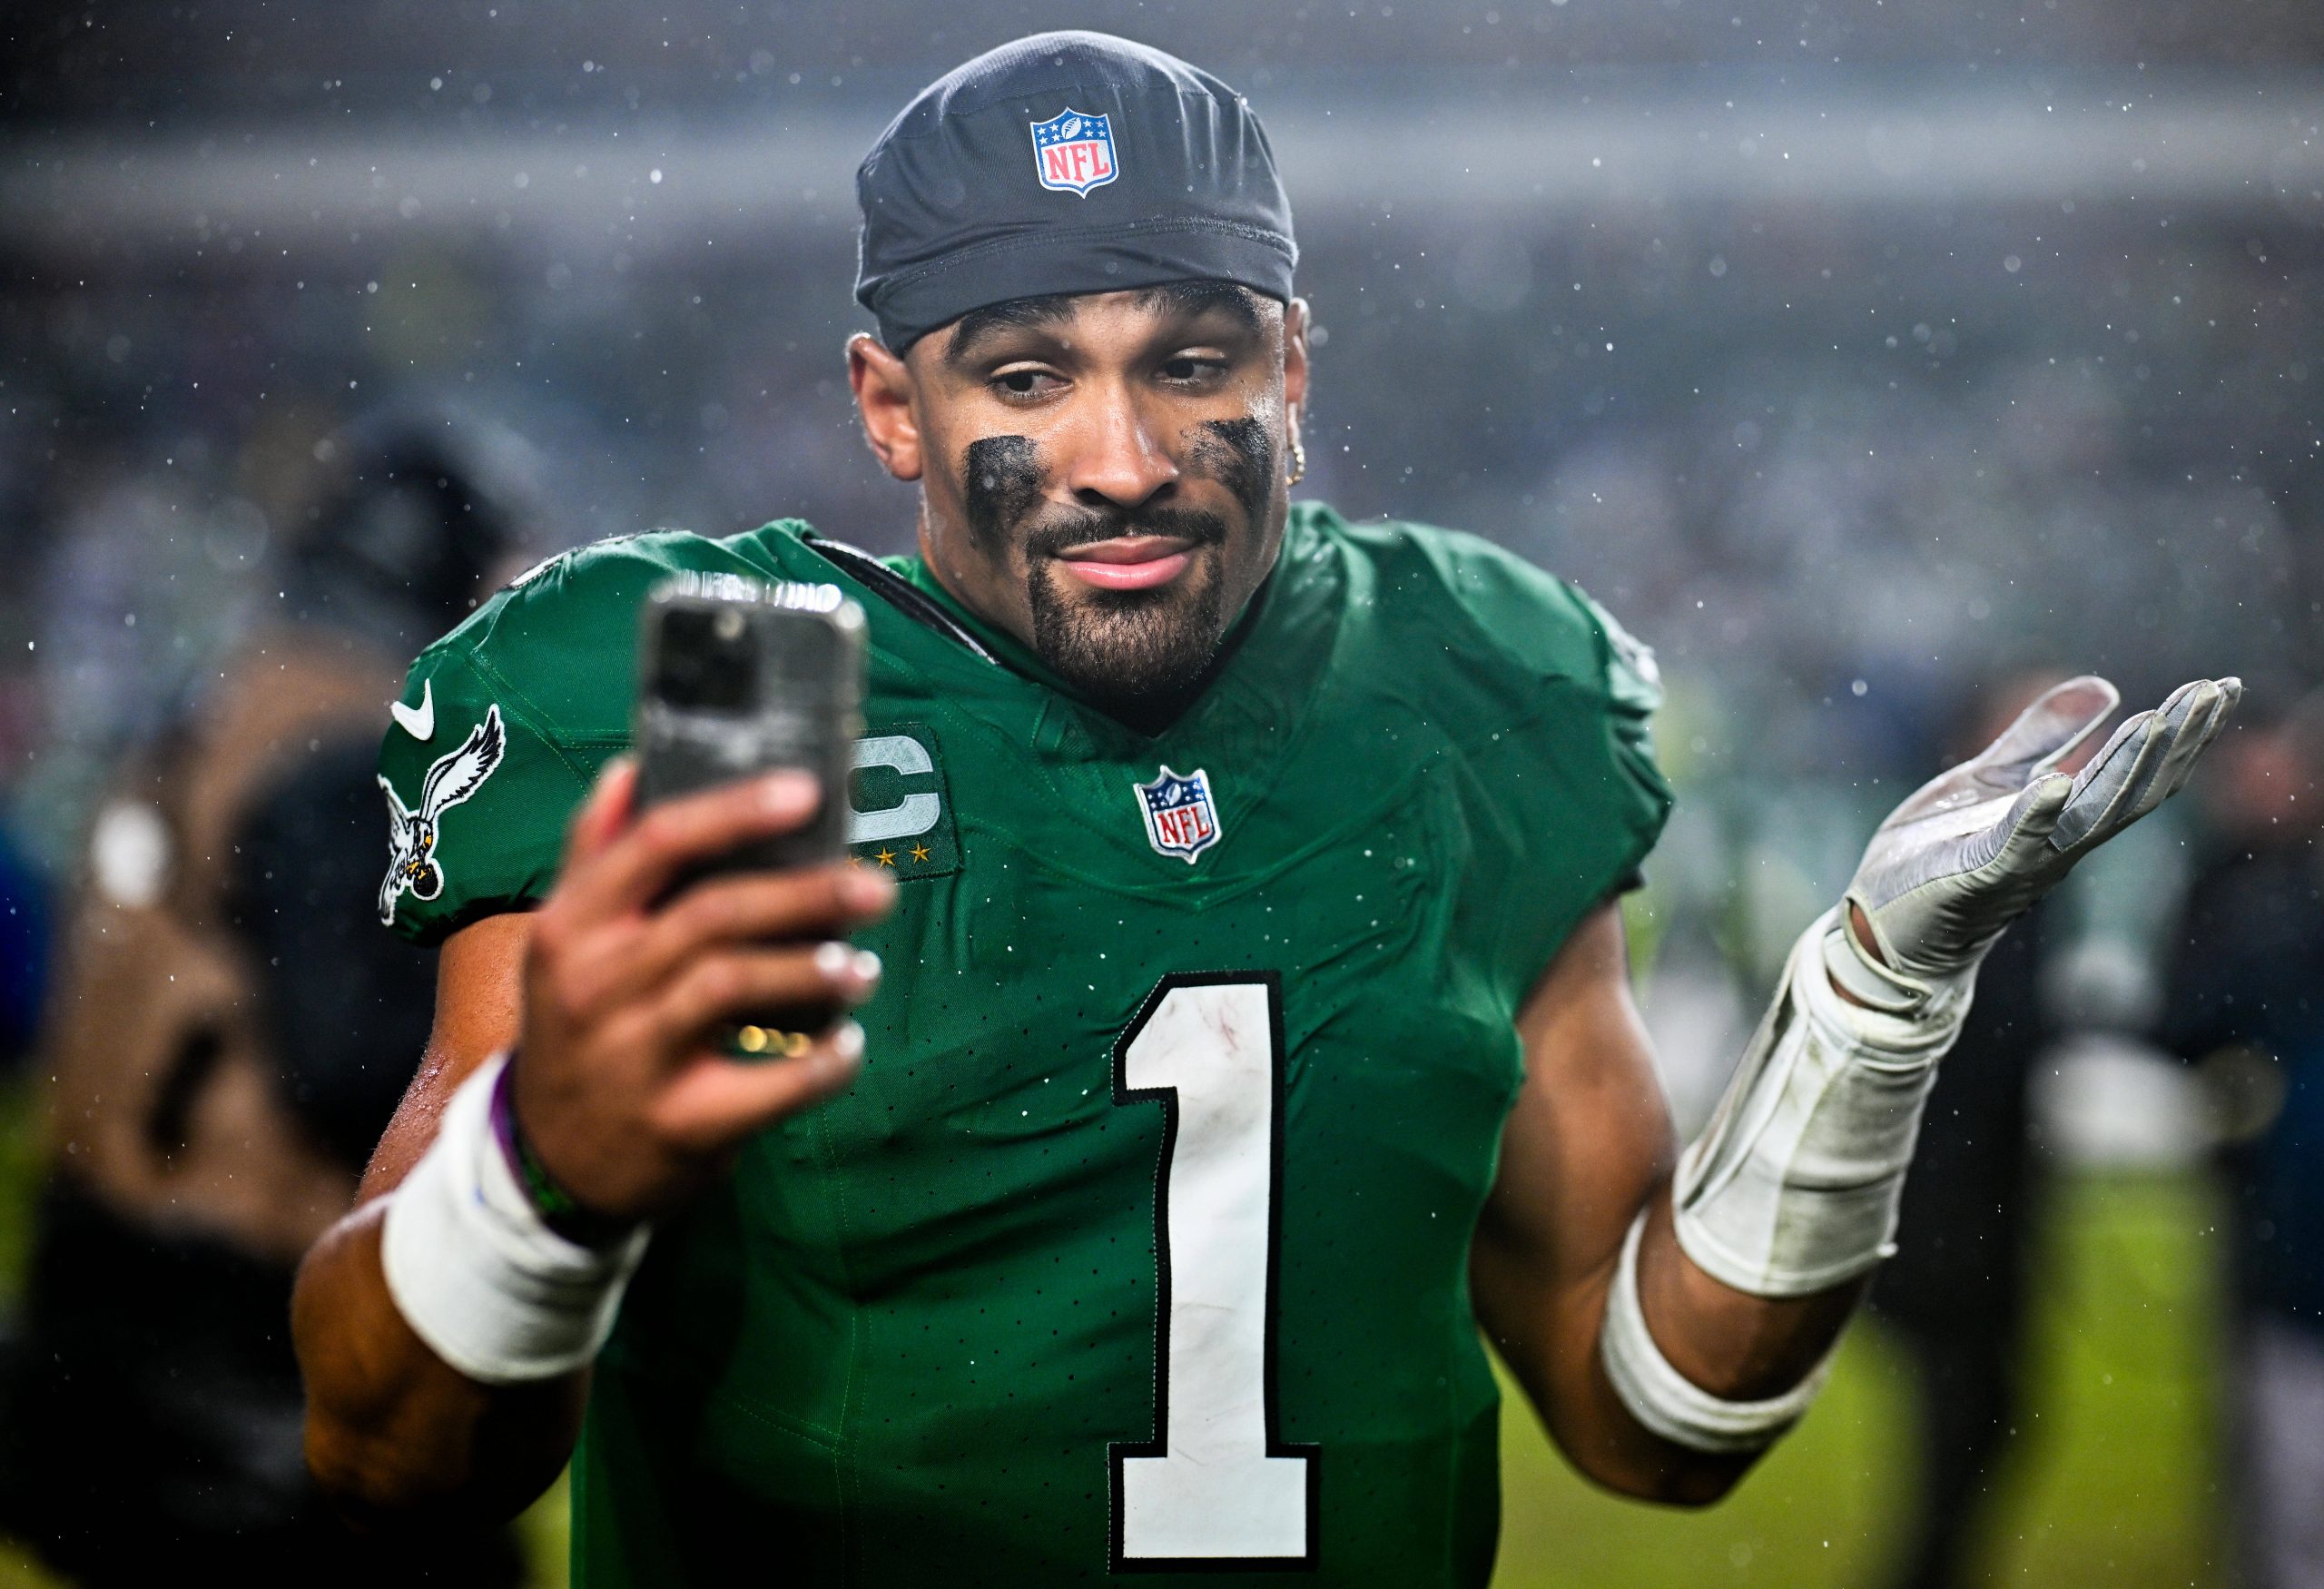 FootballR - NFL Spielverschiebung - Ein Spieler der Philadelphia Eagles, Jalen Hurts, macht während eines NFL-Spiels gegen die Seahawks ein Selfie im Regen.